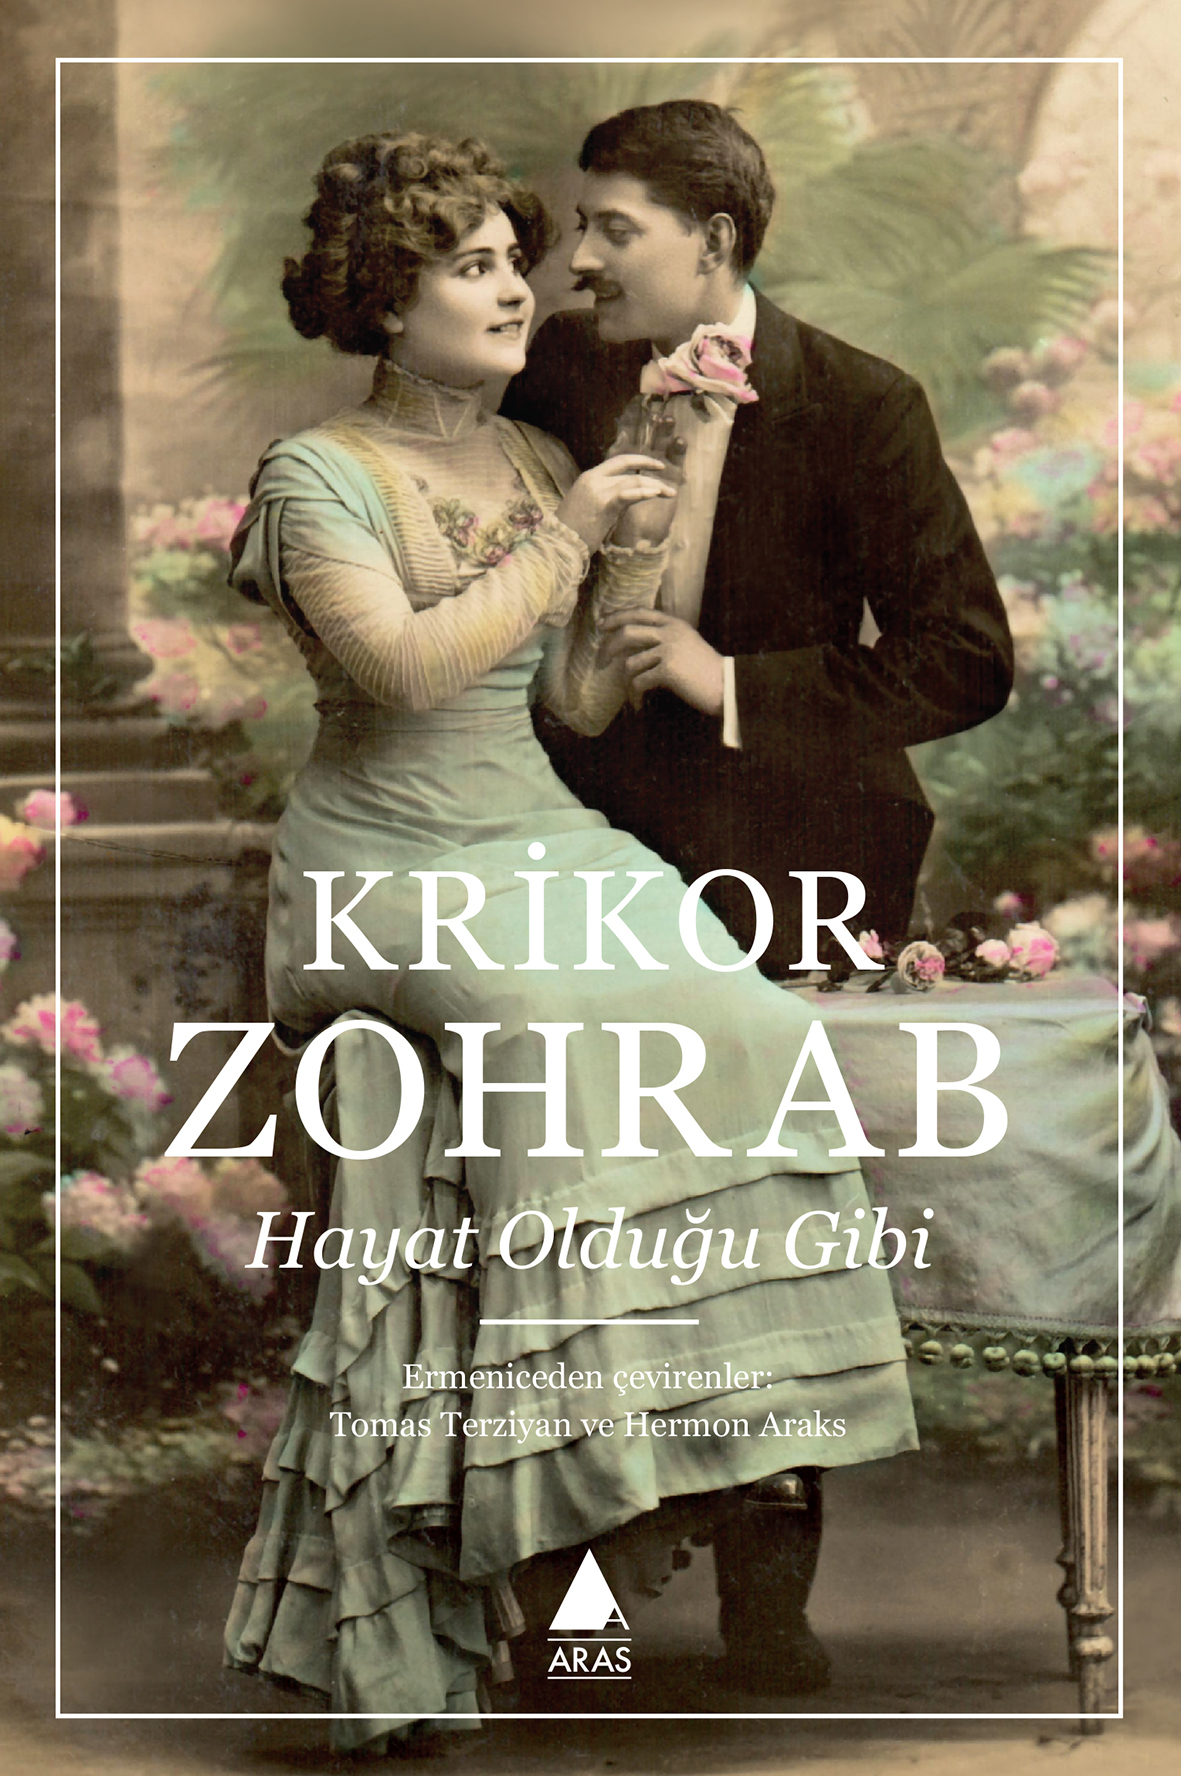 Türkiyeʹde Ermeni yazar Krikor Zohrabʹın ʹʹHayat olduğu gibiʹʹ kitabının Türkçe çevirisi yayınlanıyor